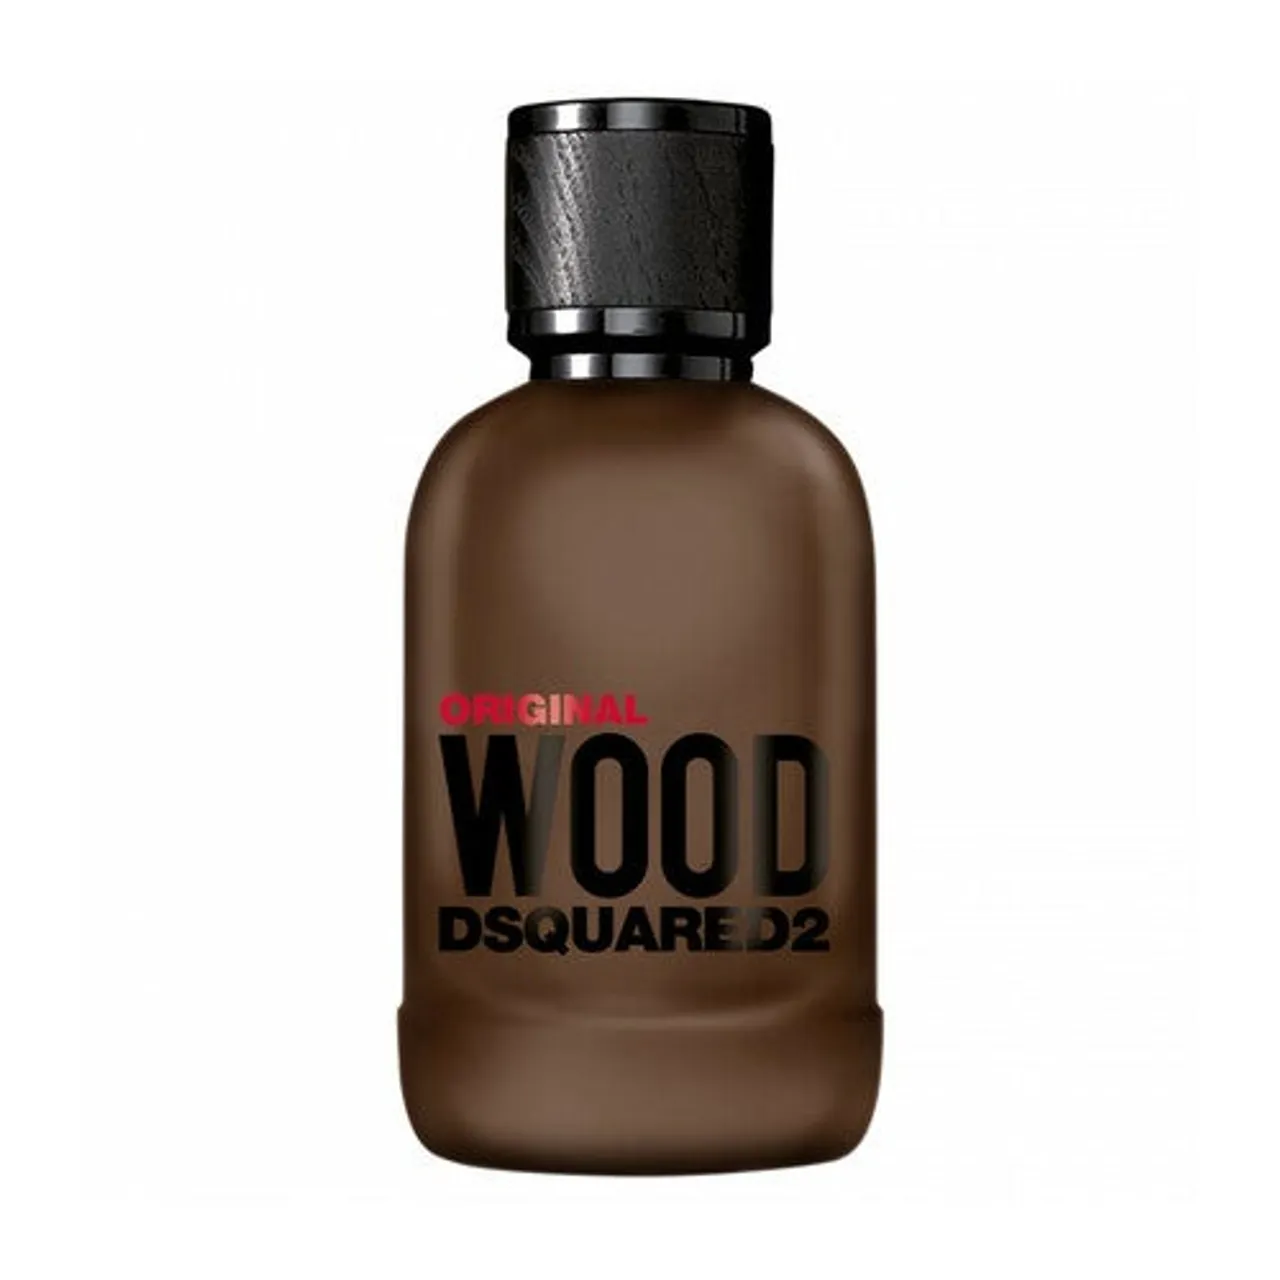 Dsquared² Original Wood Eau de Parfum 100 ml